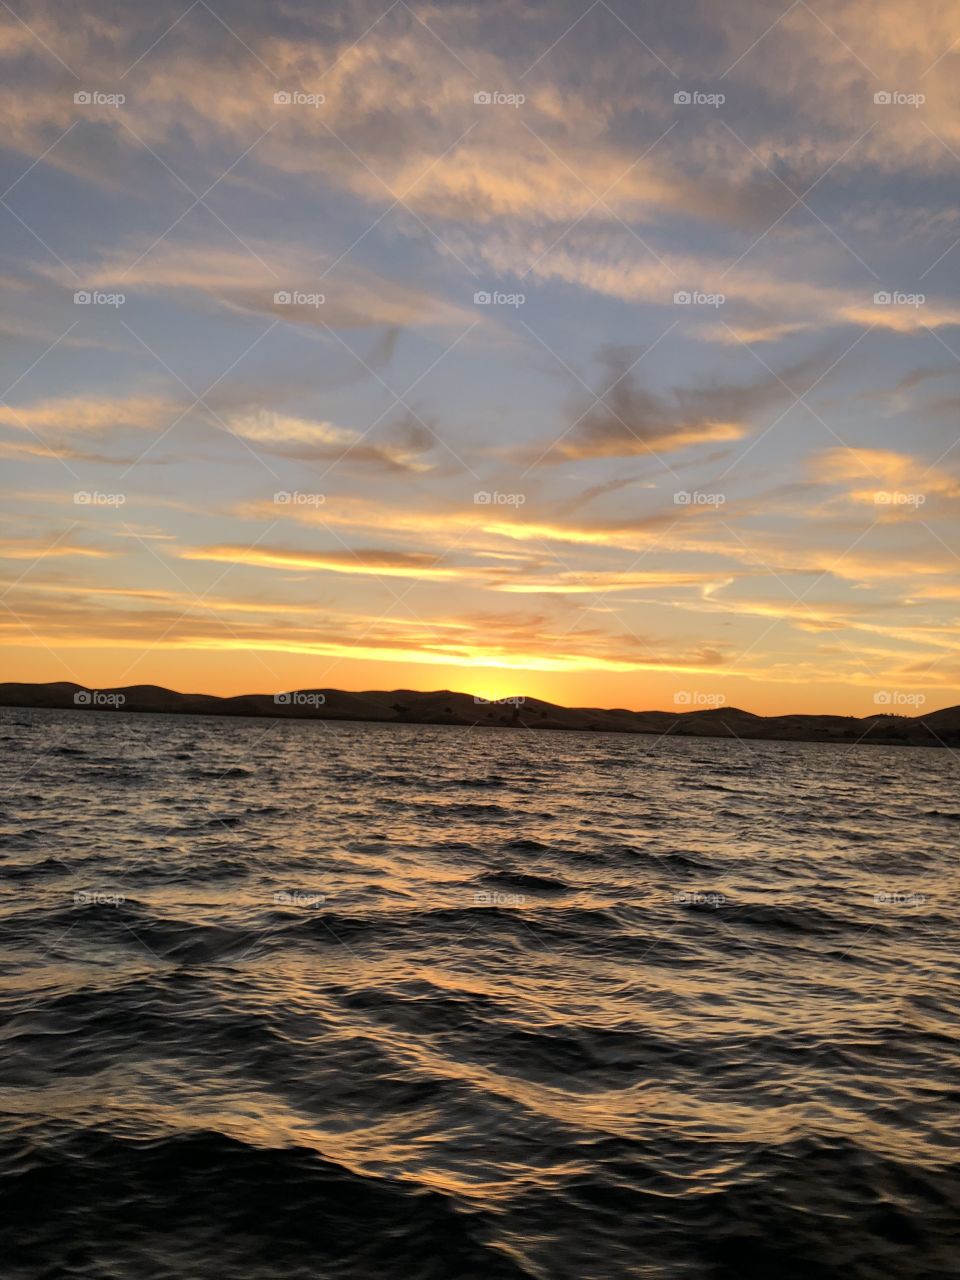 Lake at sunset 